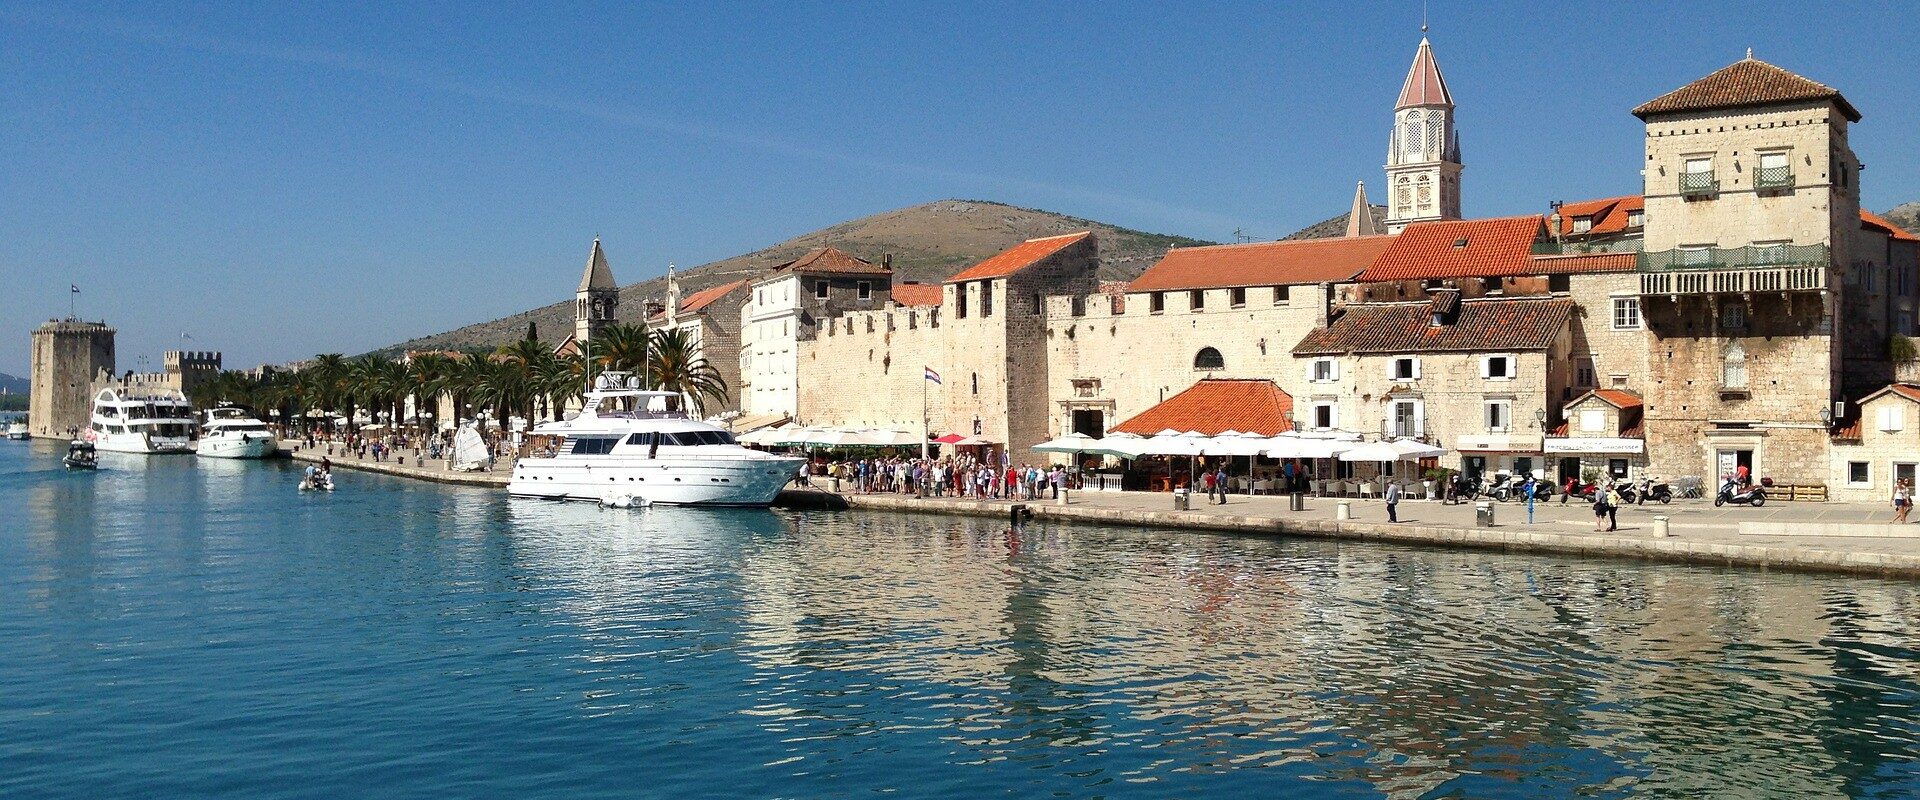 Blue lagoon and town Trogir